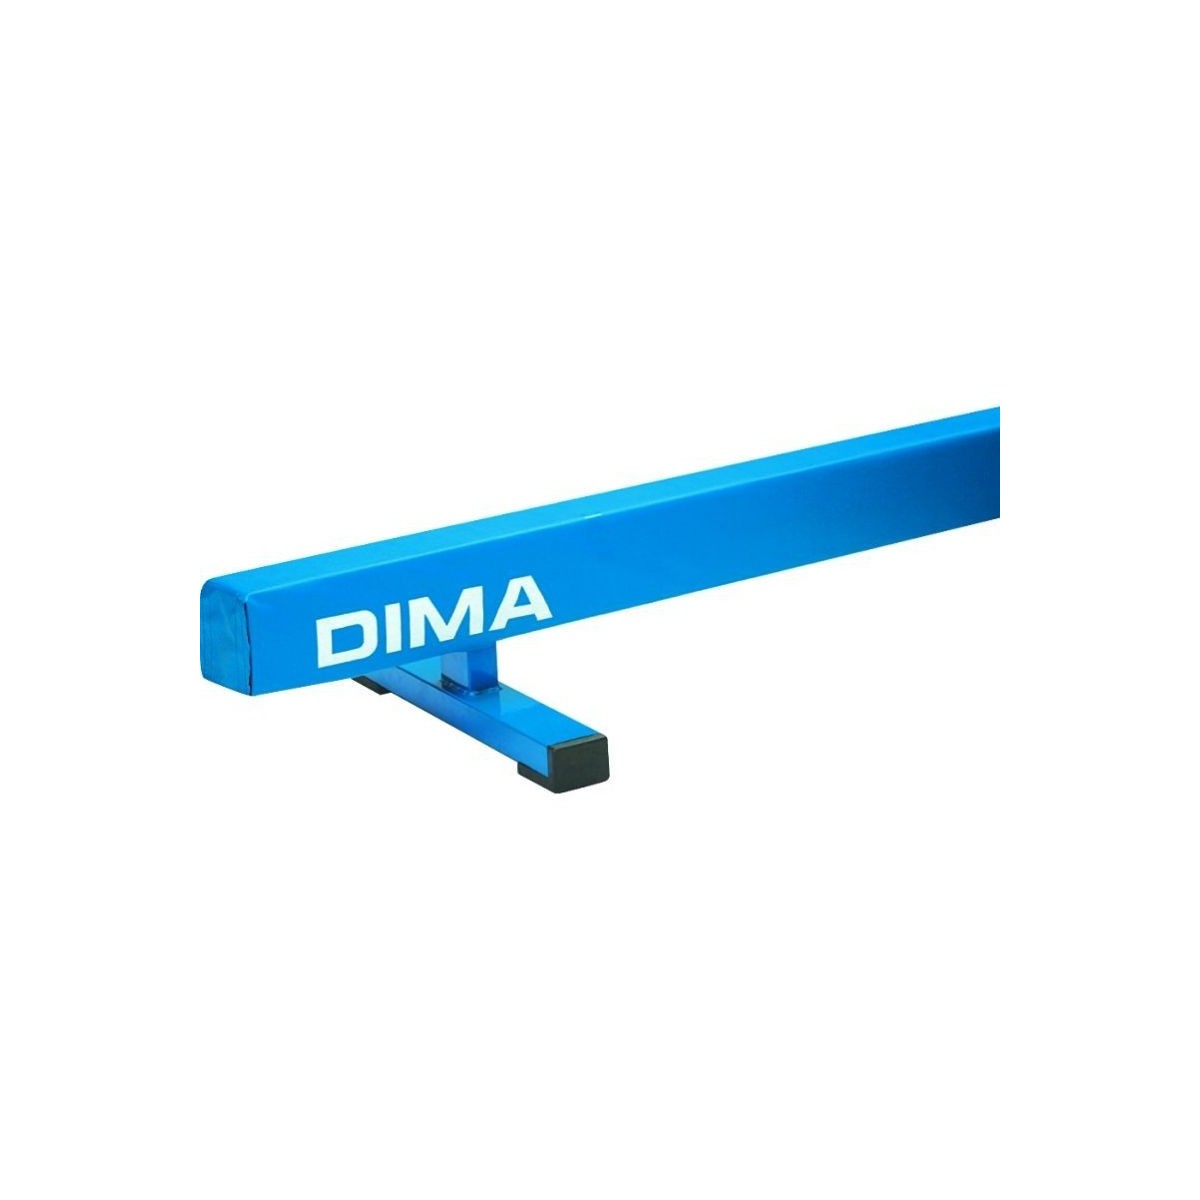 Poutre basse Dima - 3 - Poutre basse de gymnastique Dima Sport destinée aux clubs et aux écoles, cette poutre basse de gymnastiq